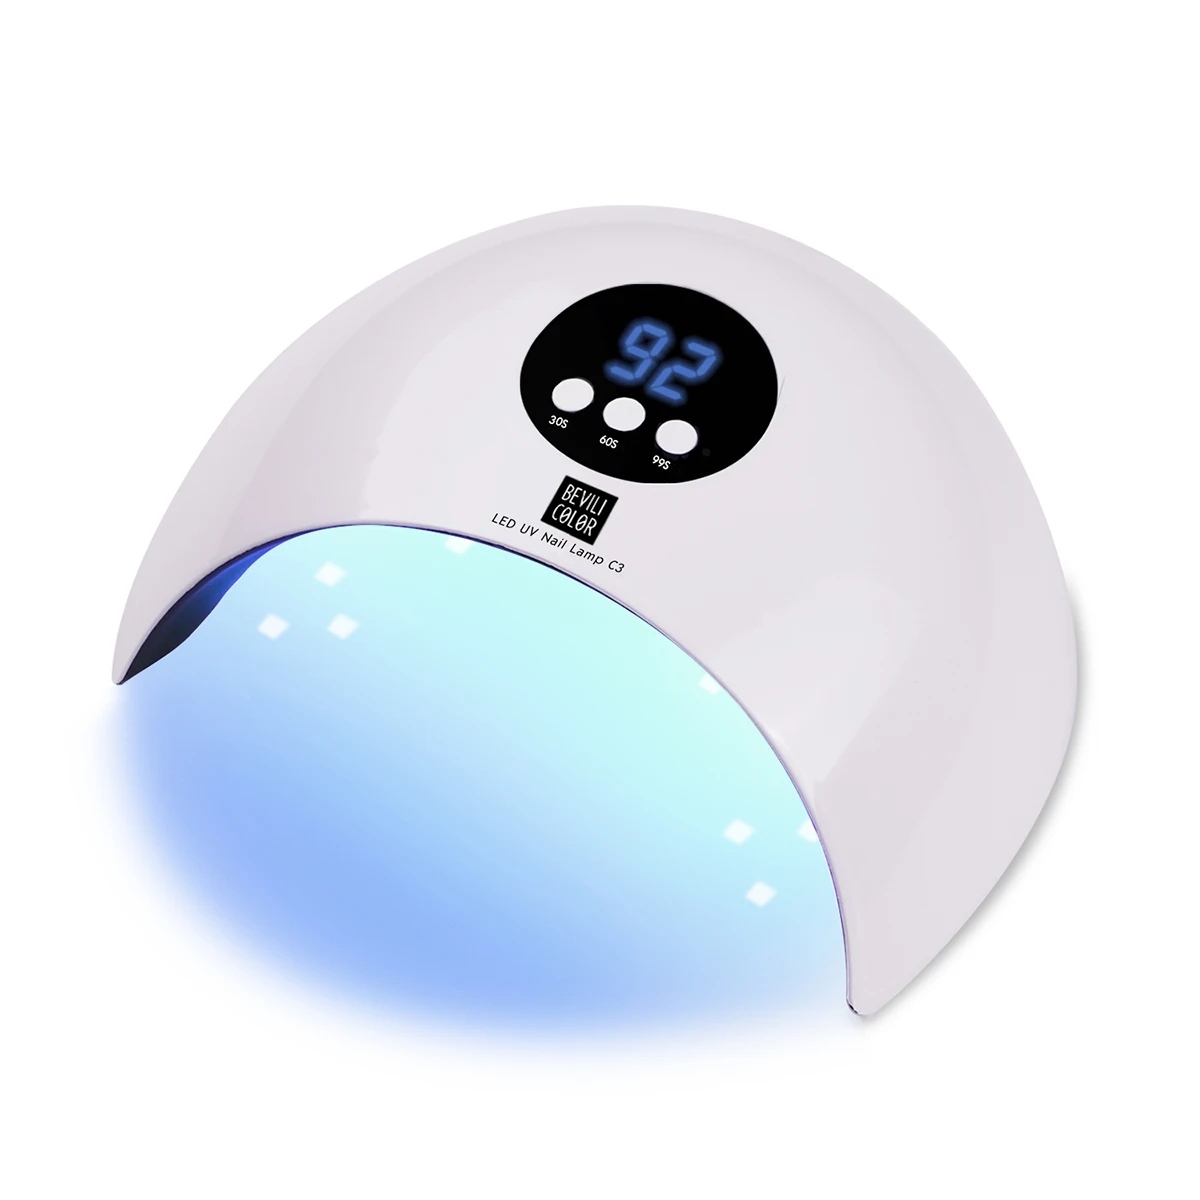 УФ светодиодный светильник для Сушилка для ногтей 36 Вт льдинка светильник для маникюра лампа для сушки гелевых ногтей лампа для сушки гель-лака Гель-лак отверждения ногтей инструменты